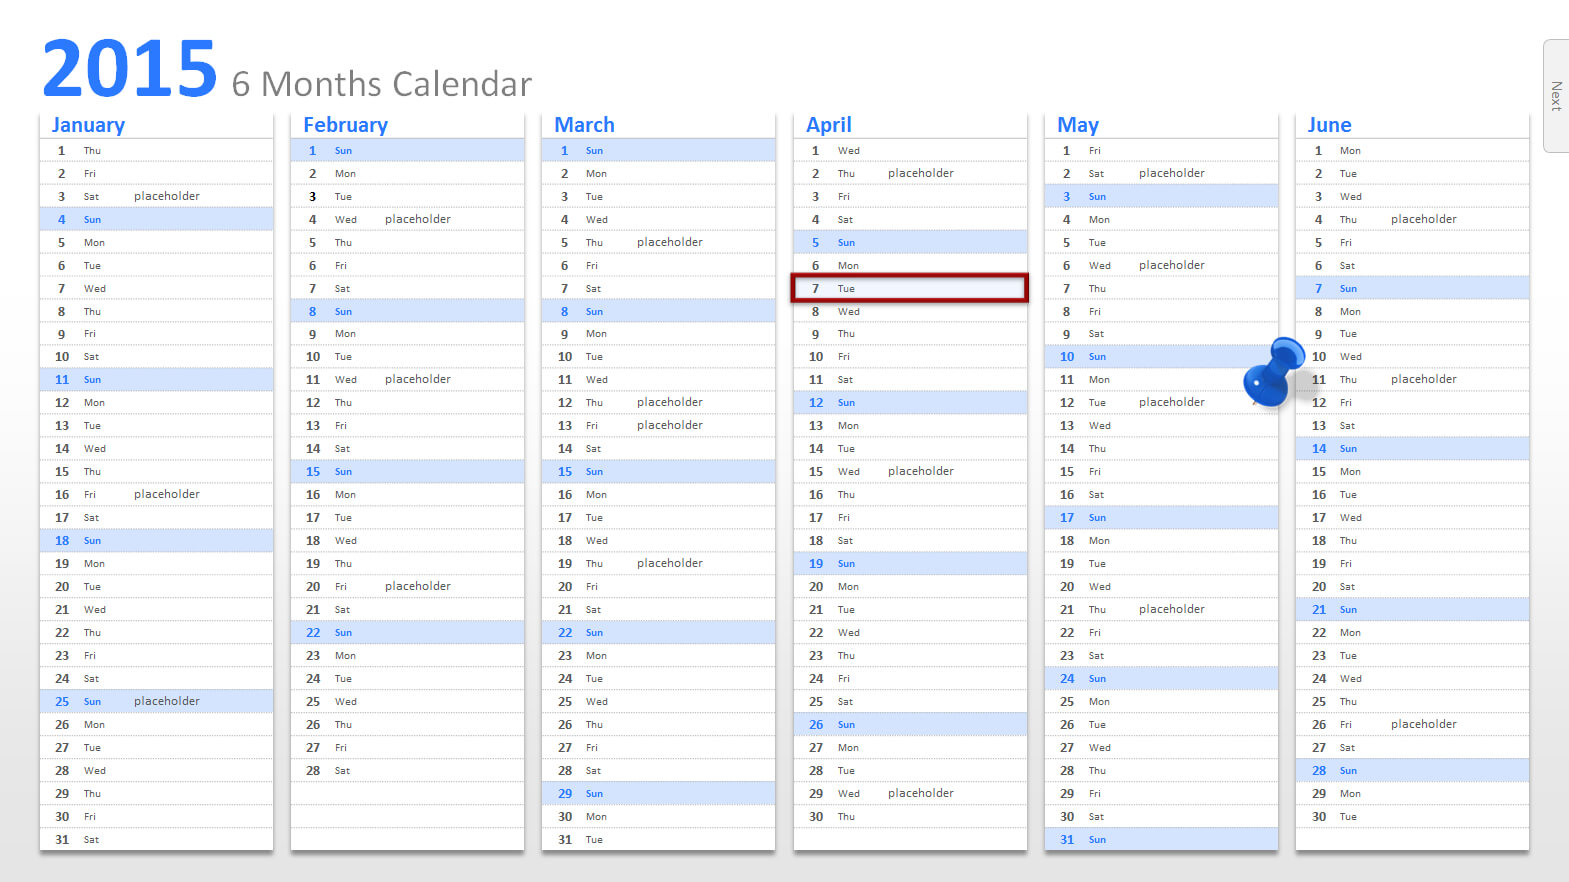 Powerpoint Calendar Template 2015 - Calep.midnightpig.co With Regard To Powerpoint Calendar Template 2015